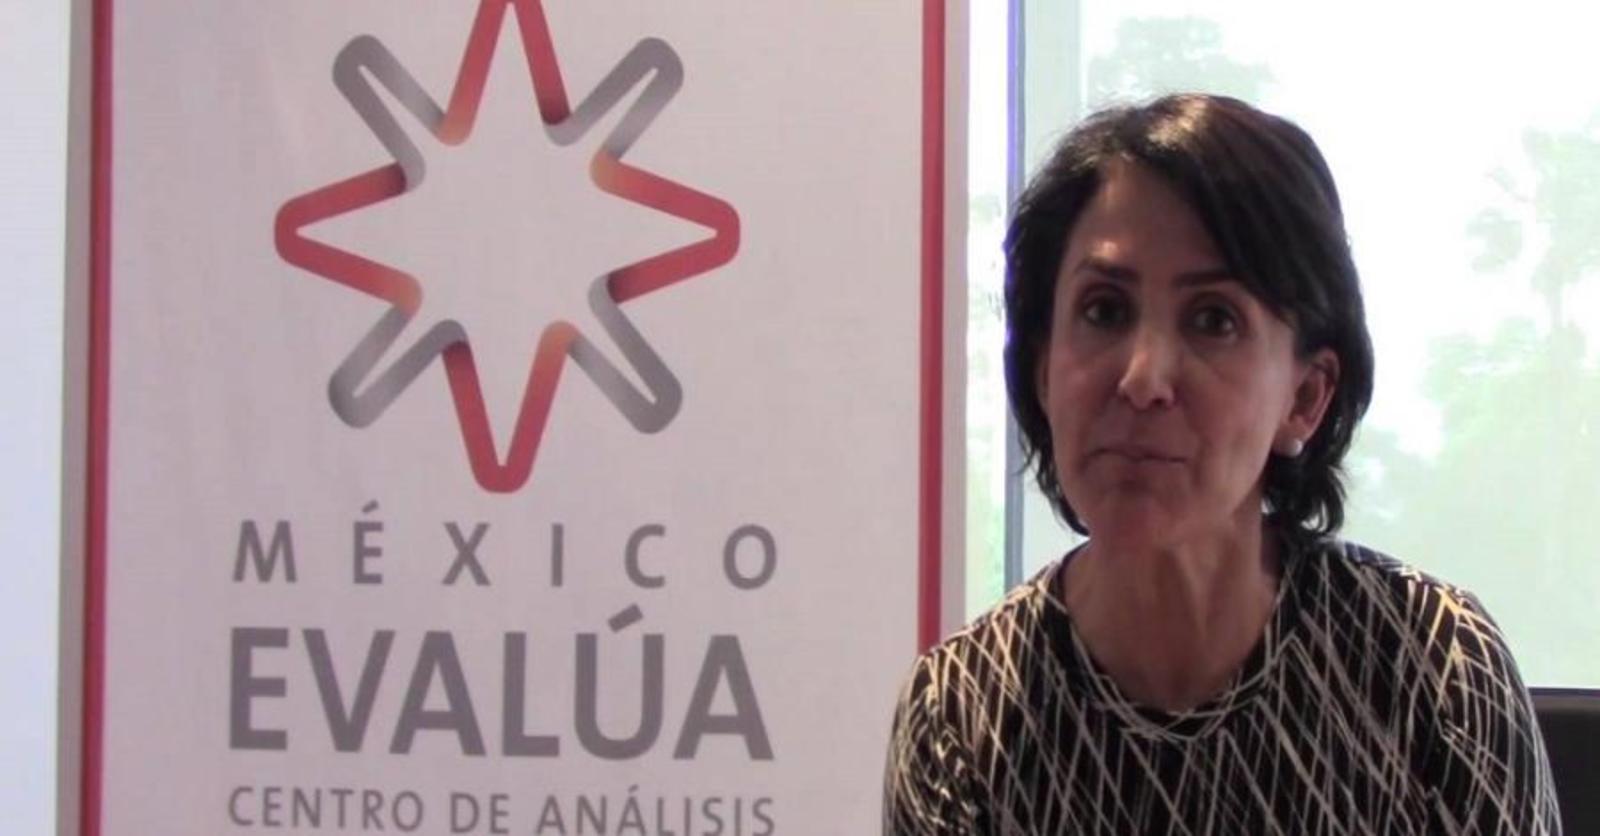 'Urge mayor transparencia en Pemex y CFE'